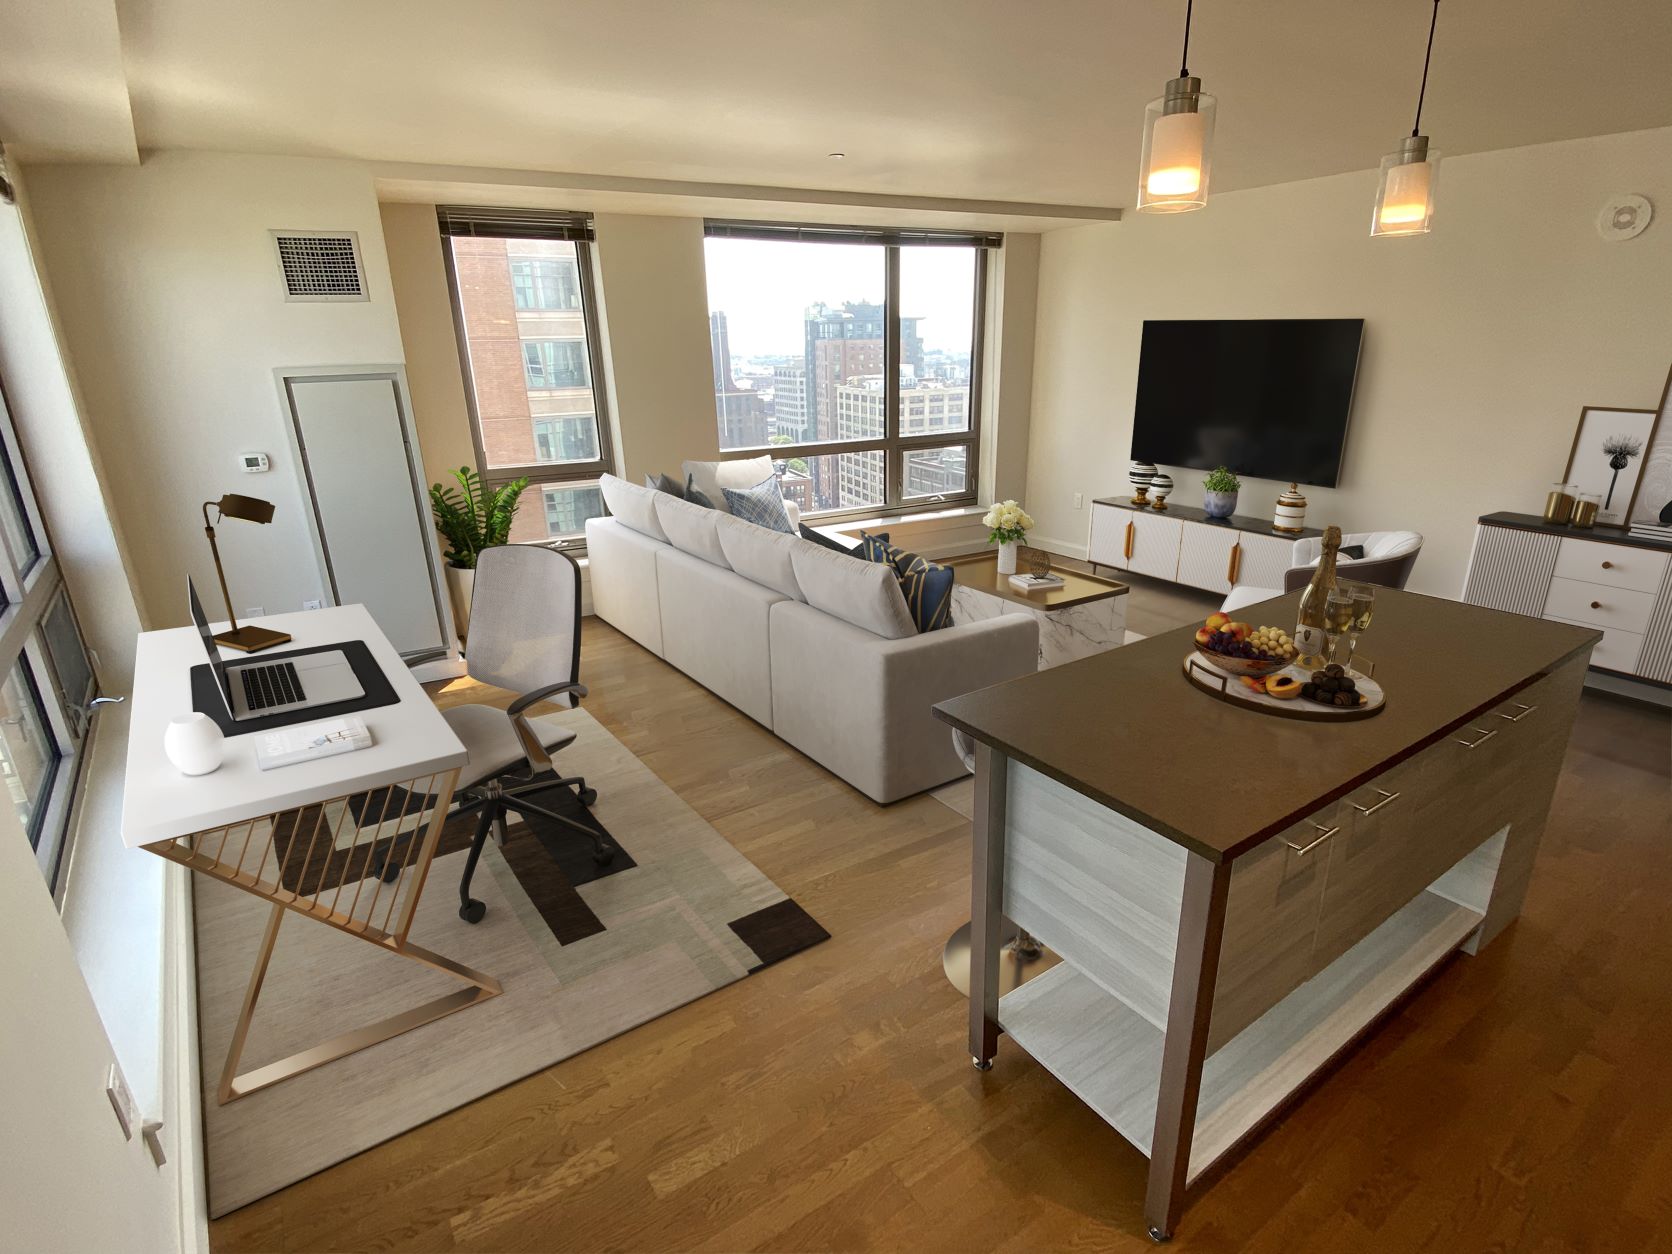 Photos of apartment on Dartmouth St.,Boston MA 02116